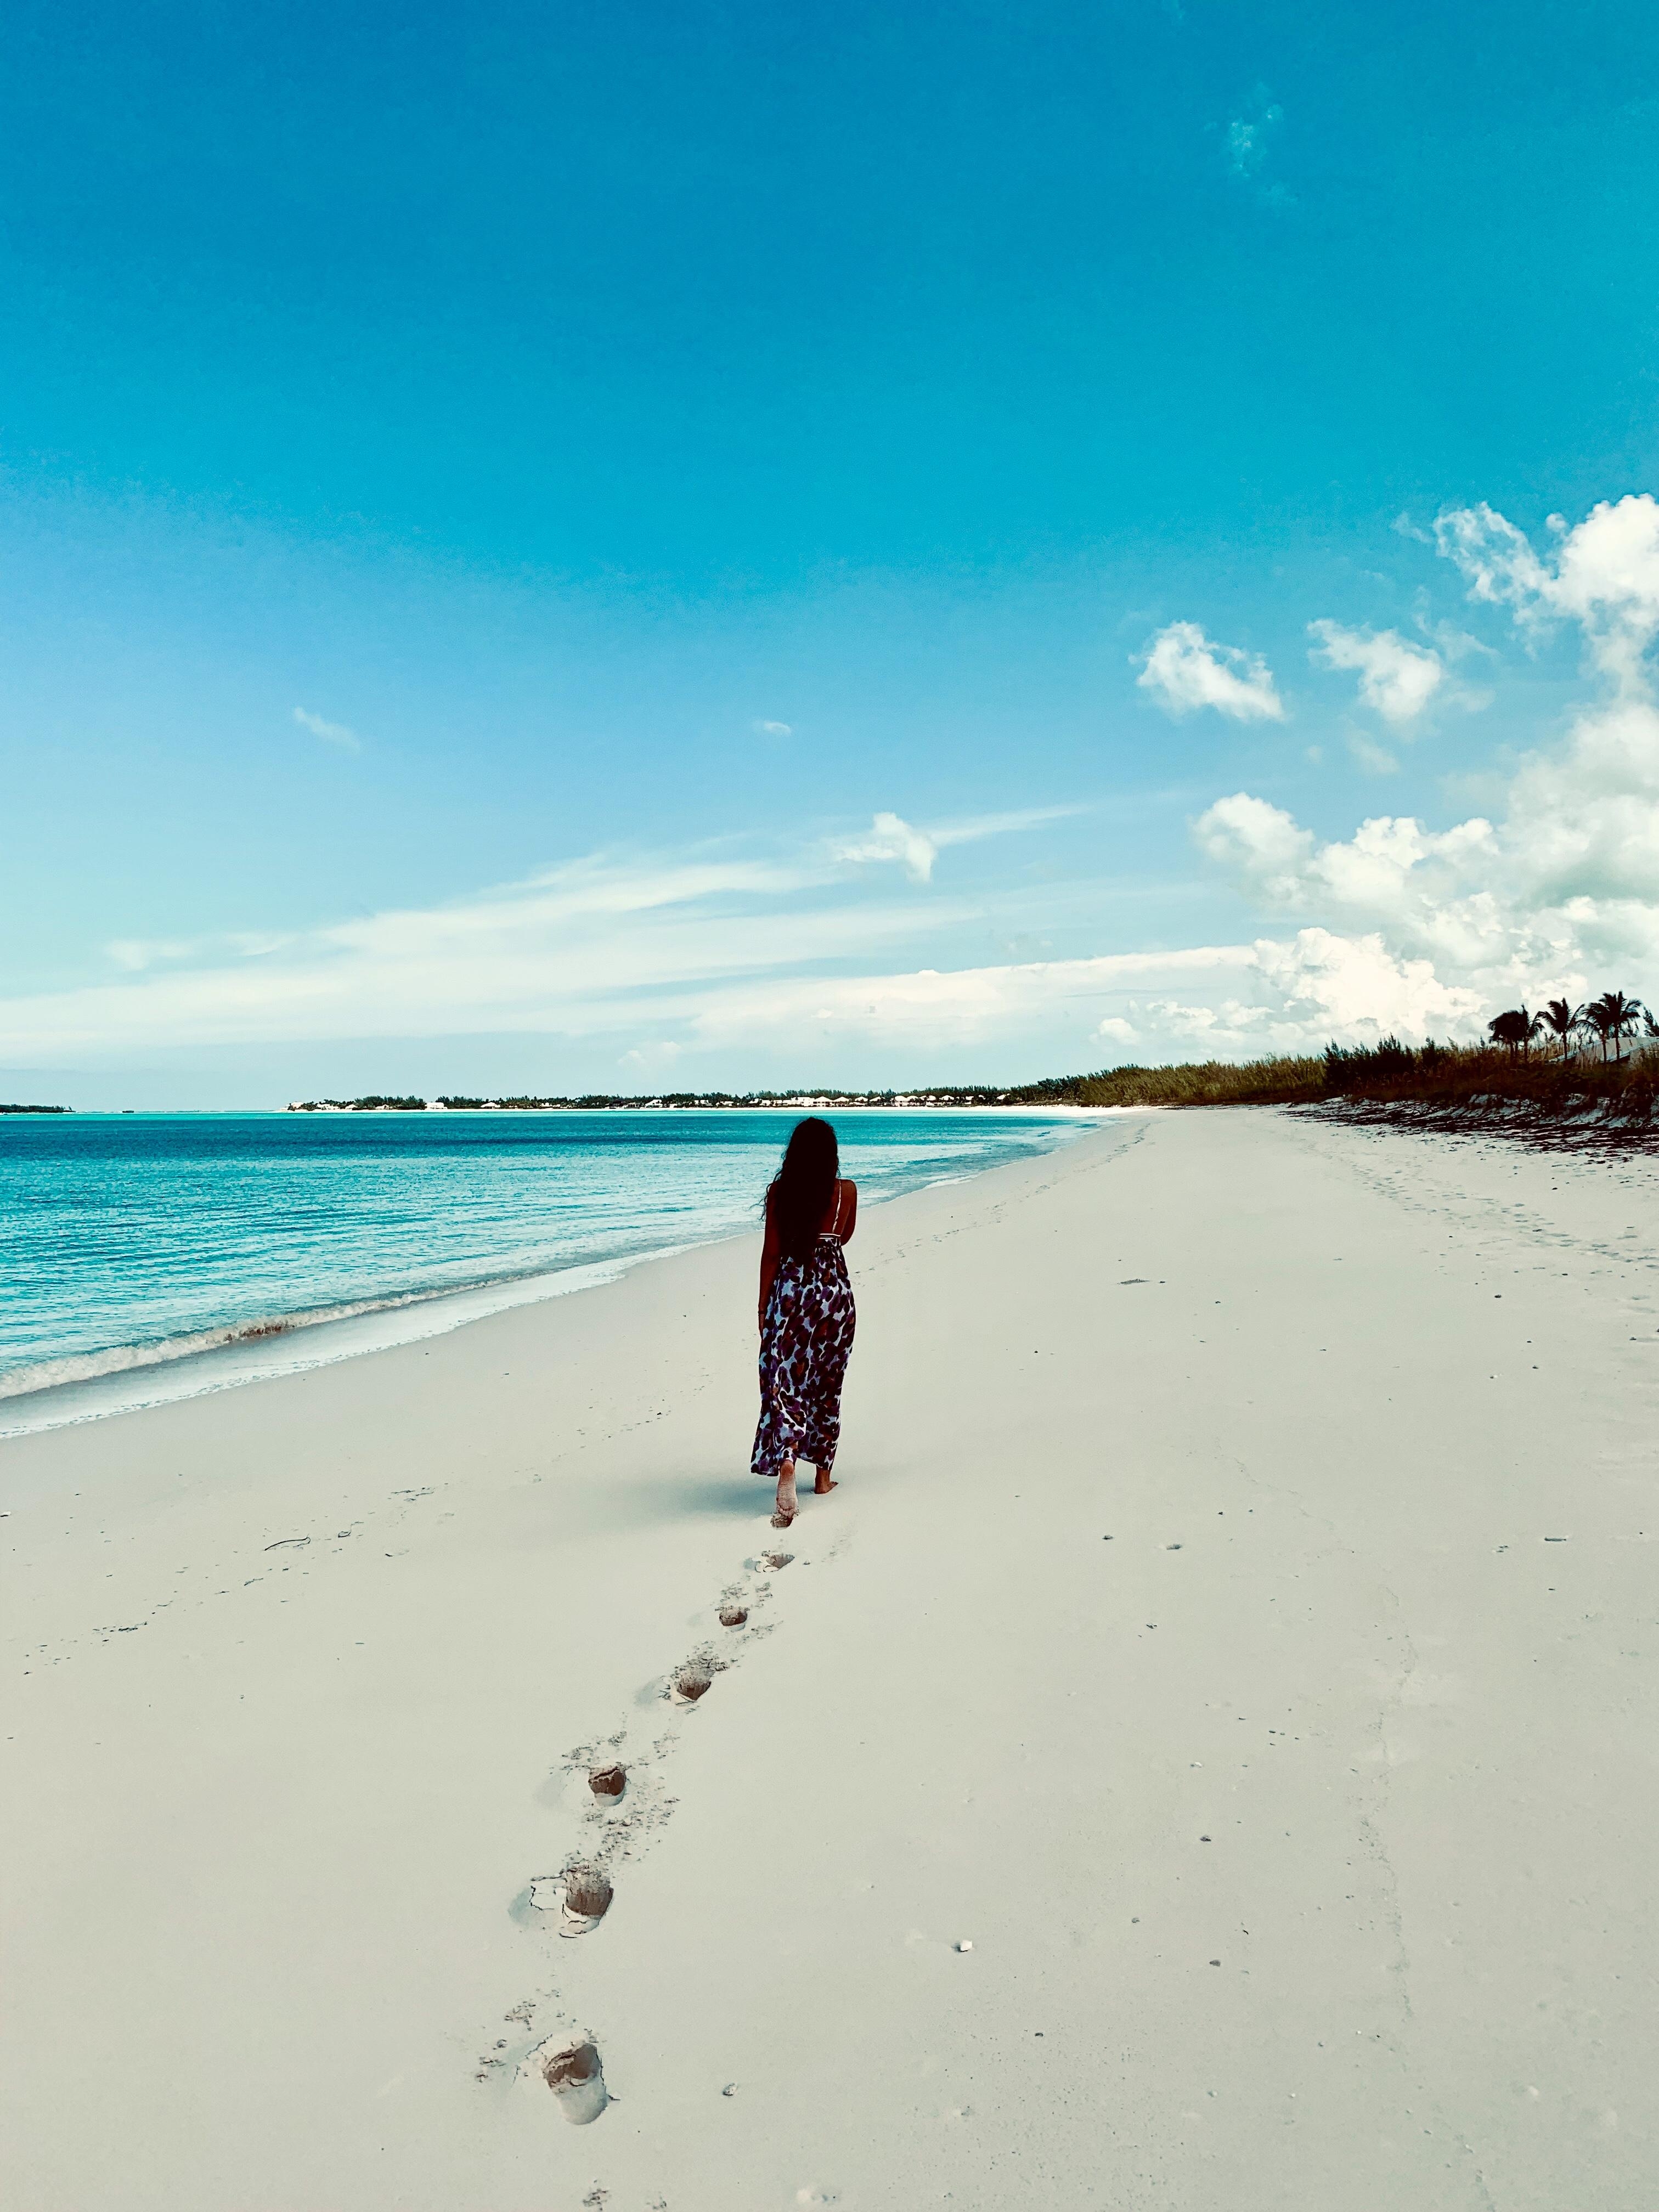 🐚
#bahamas #meinschönsterurlaub #travelchallenge